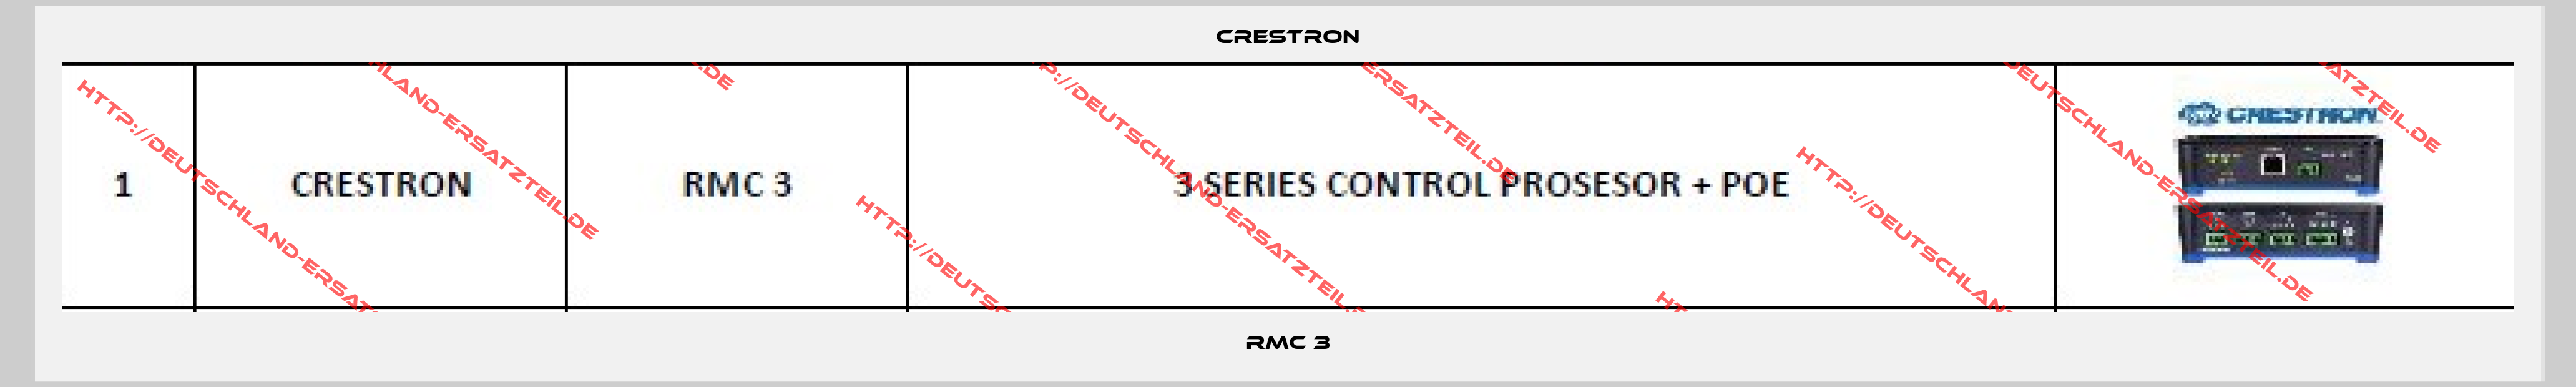 Crestron-RMC 3